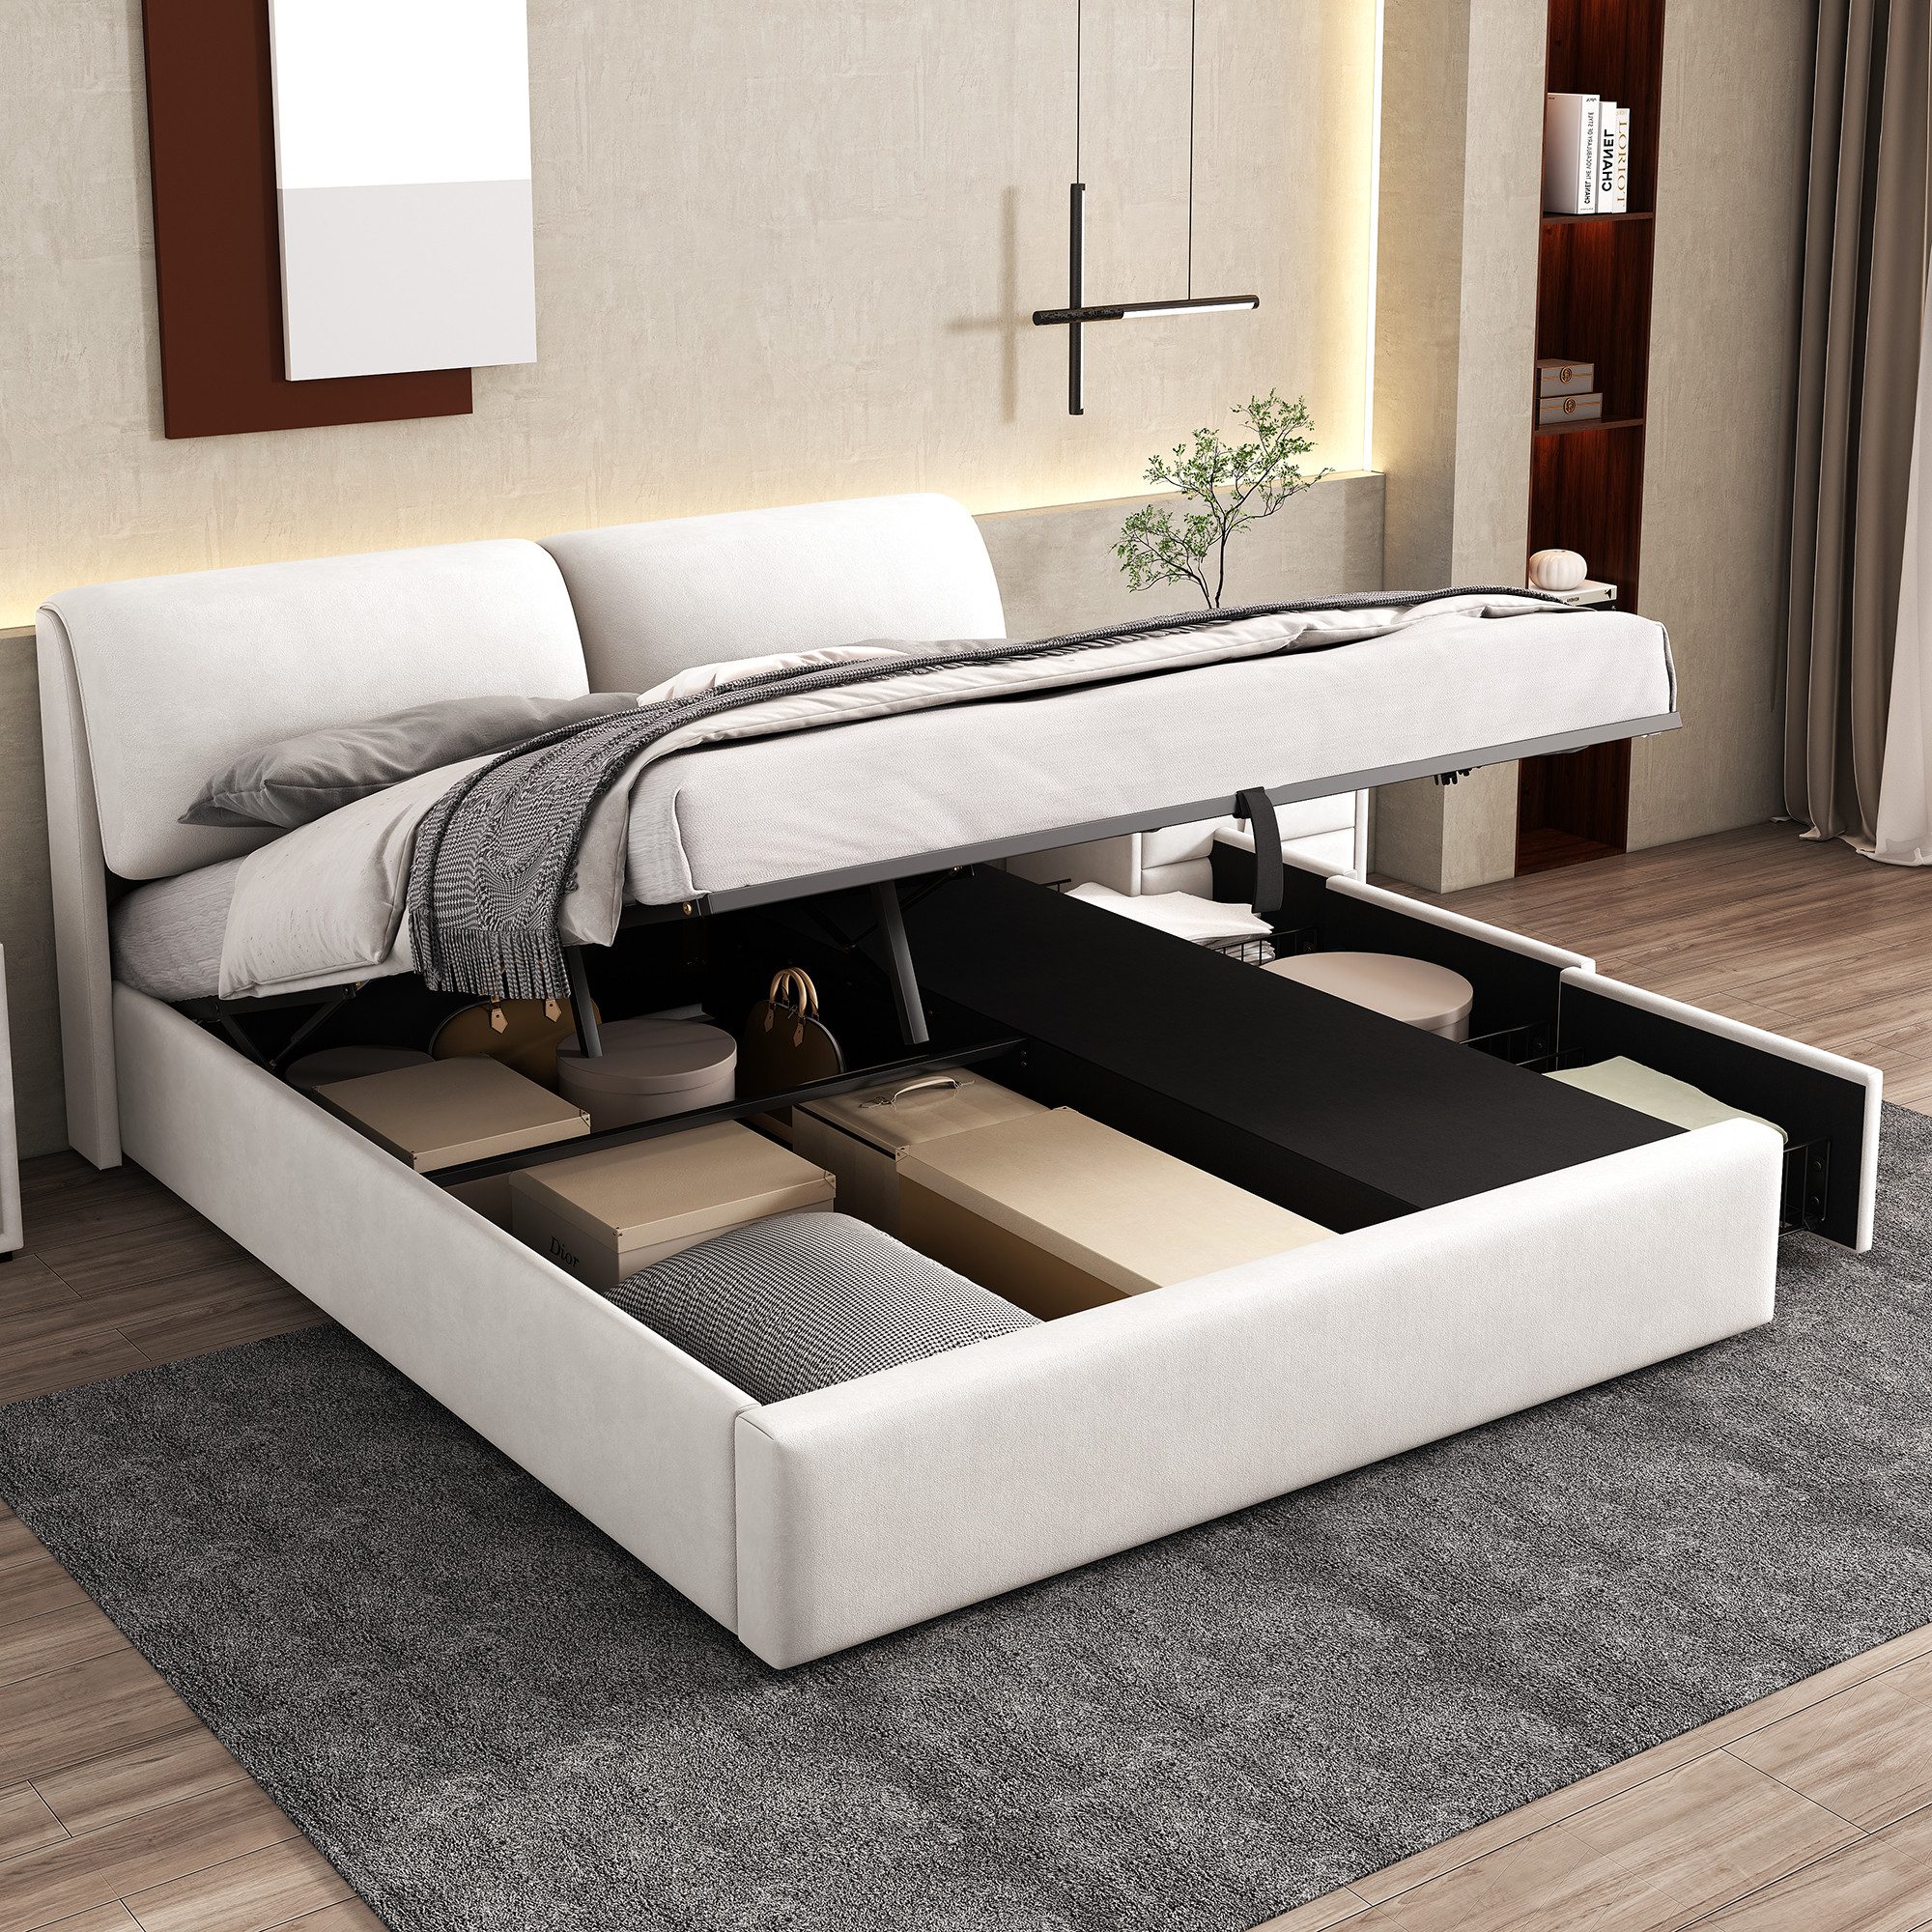 OKWISH Polsterbett Hydraulisches Bett (180*200cm), mit 3 Schubladen,Bettkasten zur Aufbewahrung, Lattenrost mit Kopfteil